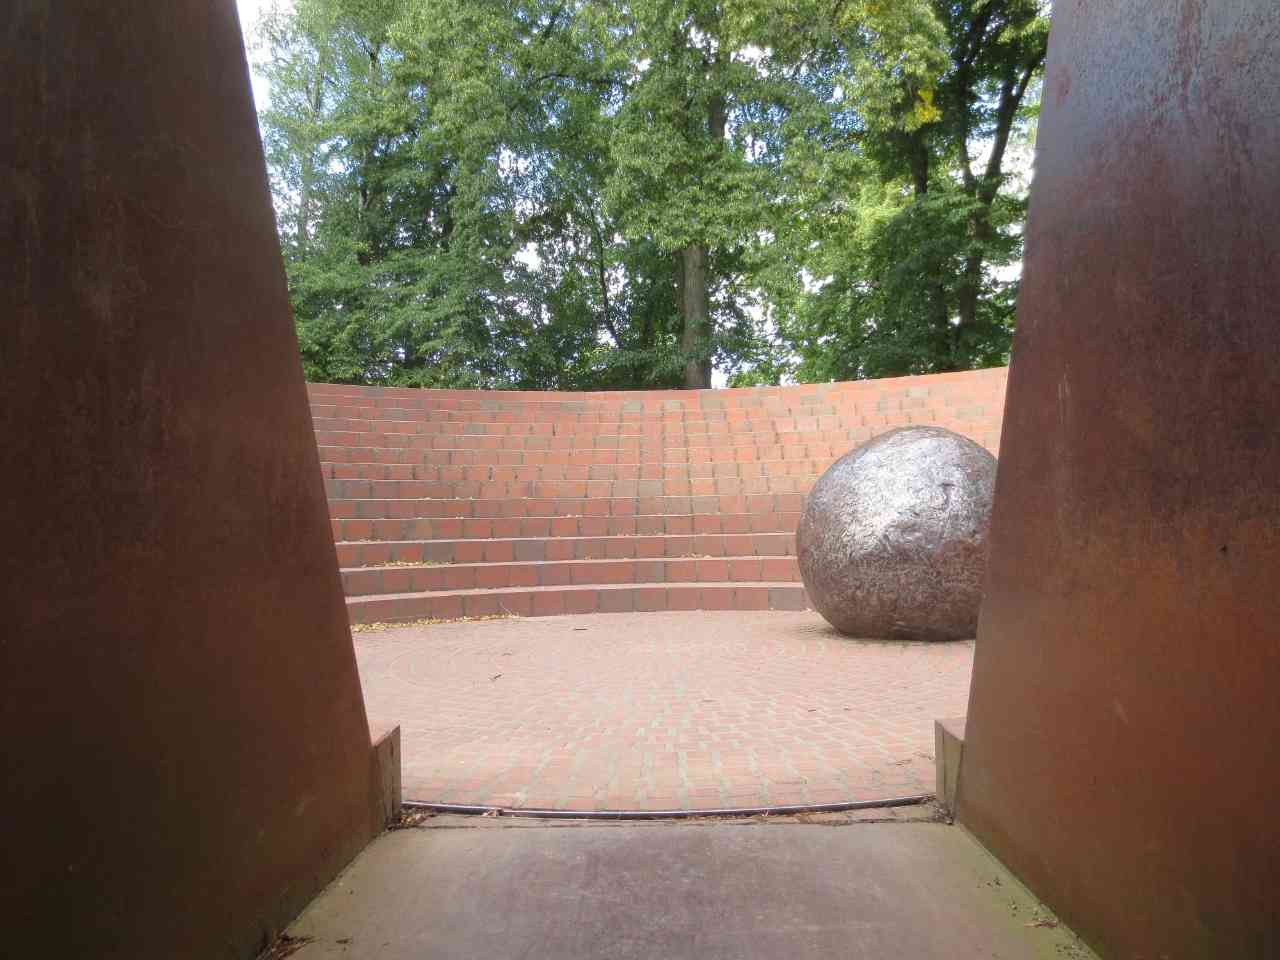 Blick ins Denkmal, Gedenken, durch den Tunnel, Amphitheater ähnliches Kreis aus Backsteinen und Metall, große Metallkugel in der Mitte